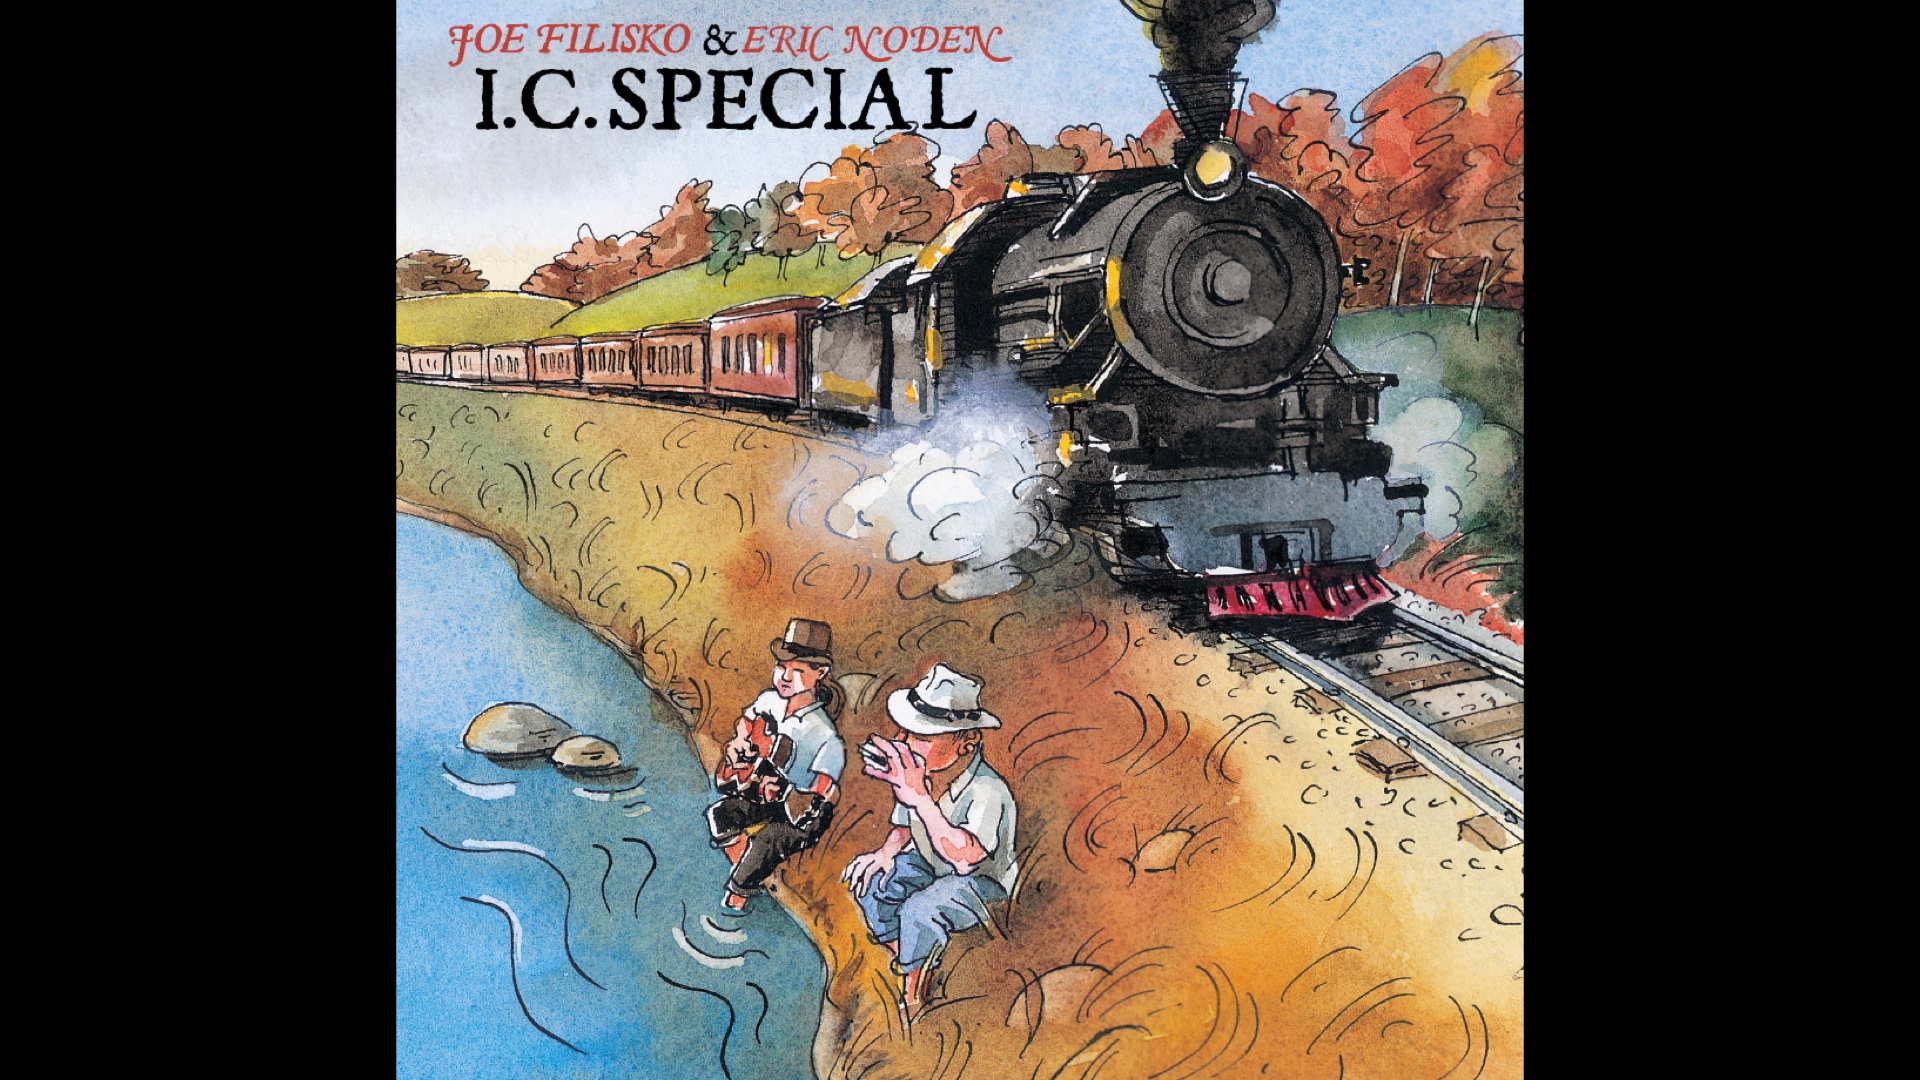 I.C. Special Album Cover